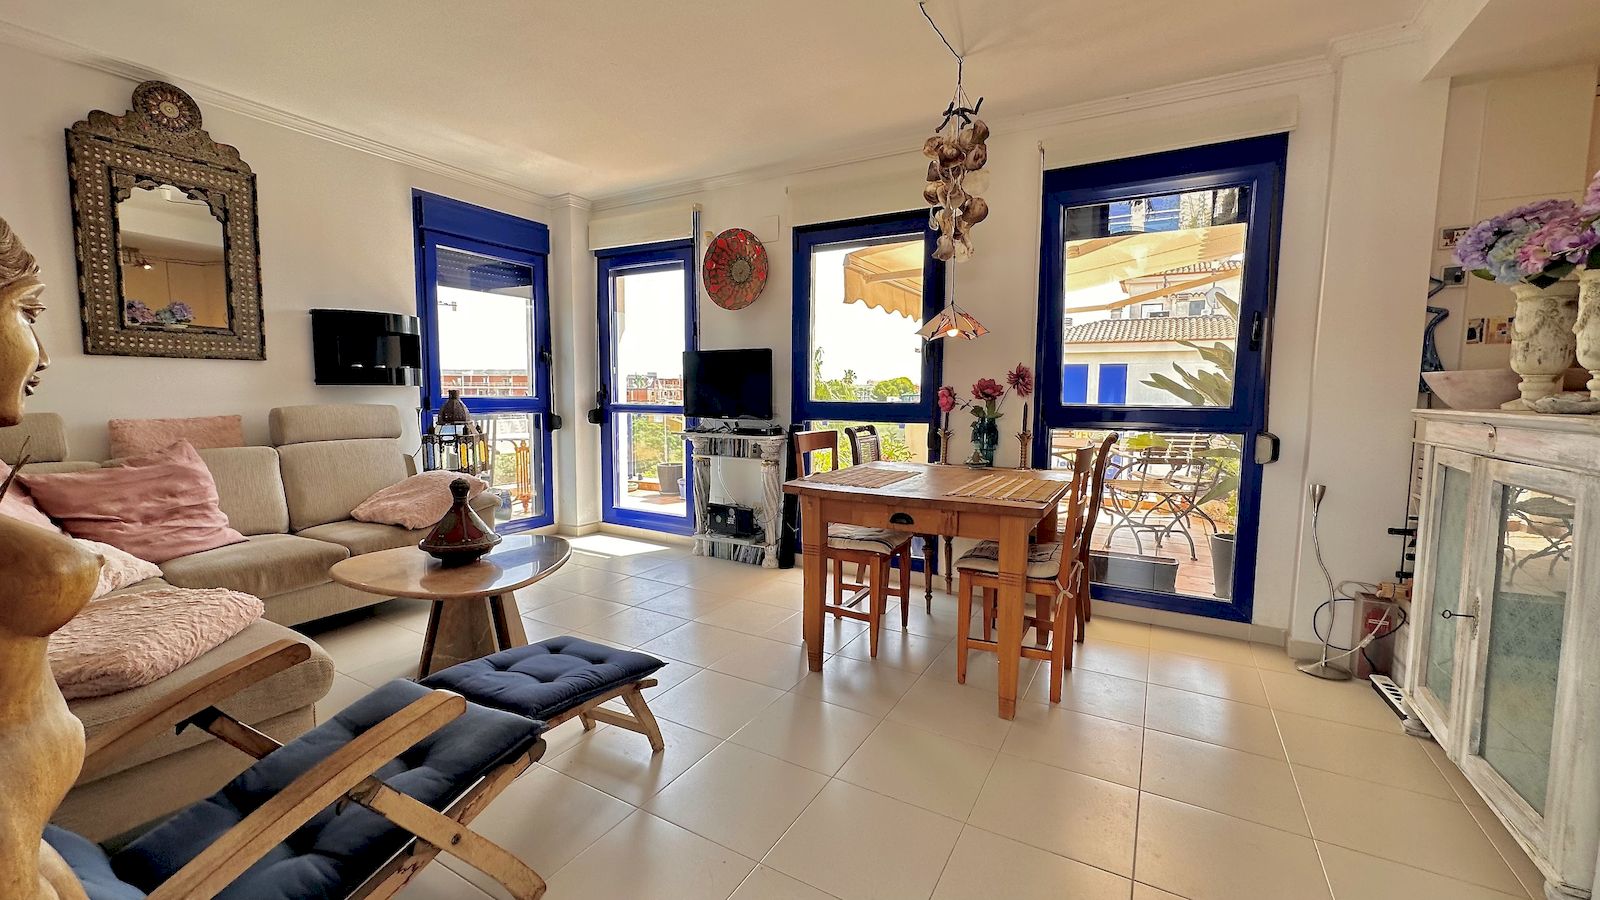 Appartement penthouse à vendre avec vue sur la mer à Devesses - Denia